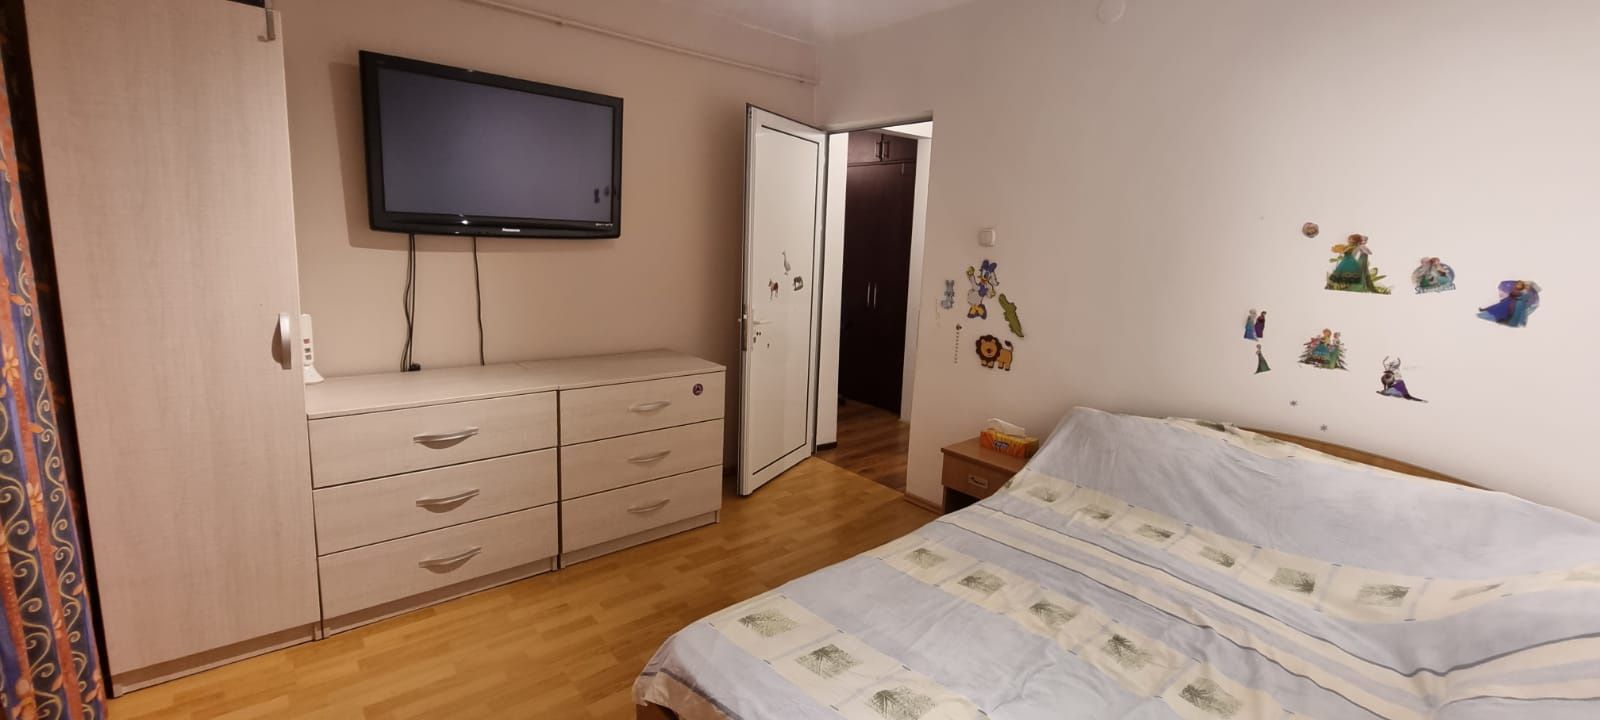 Vând apartament 3 camere Bibescu Vodă